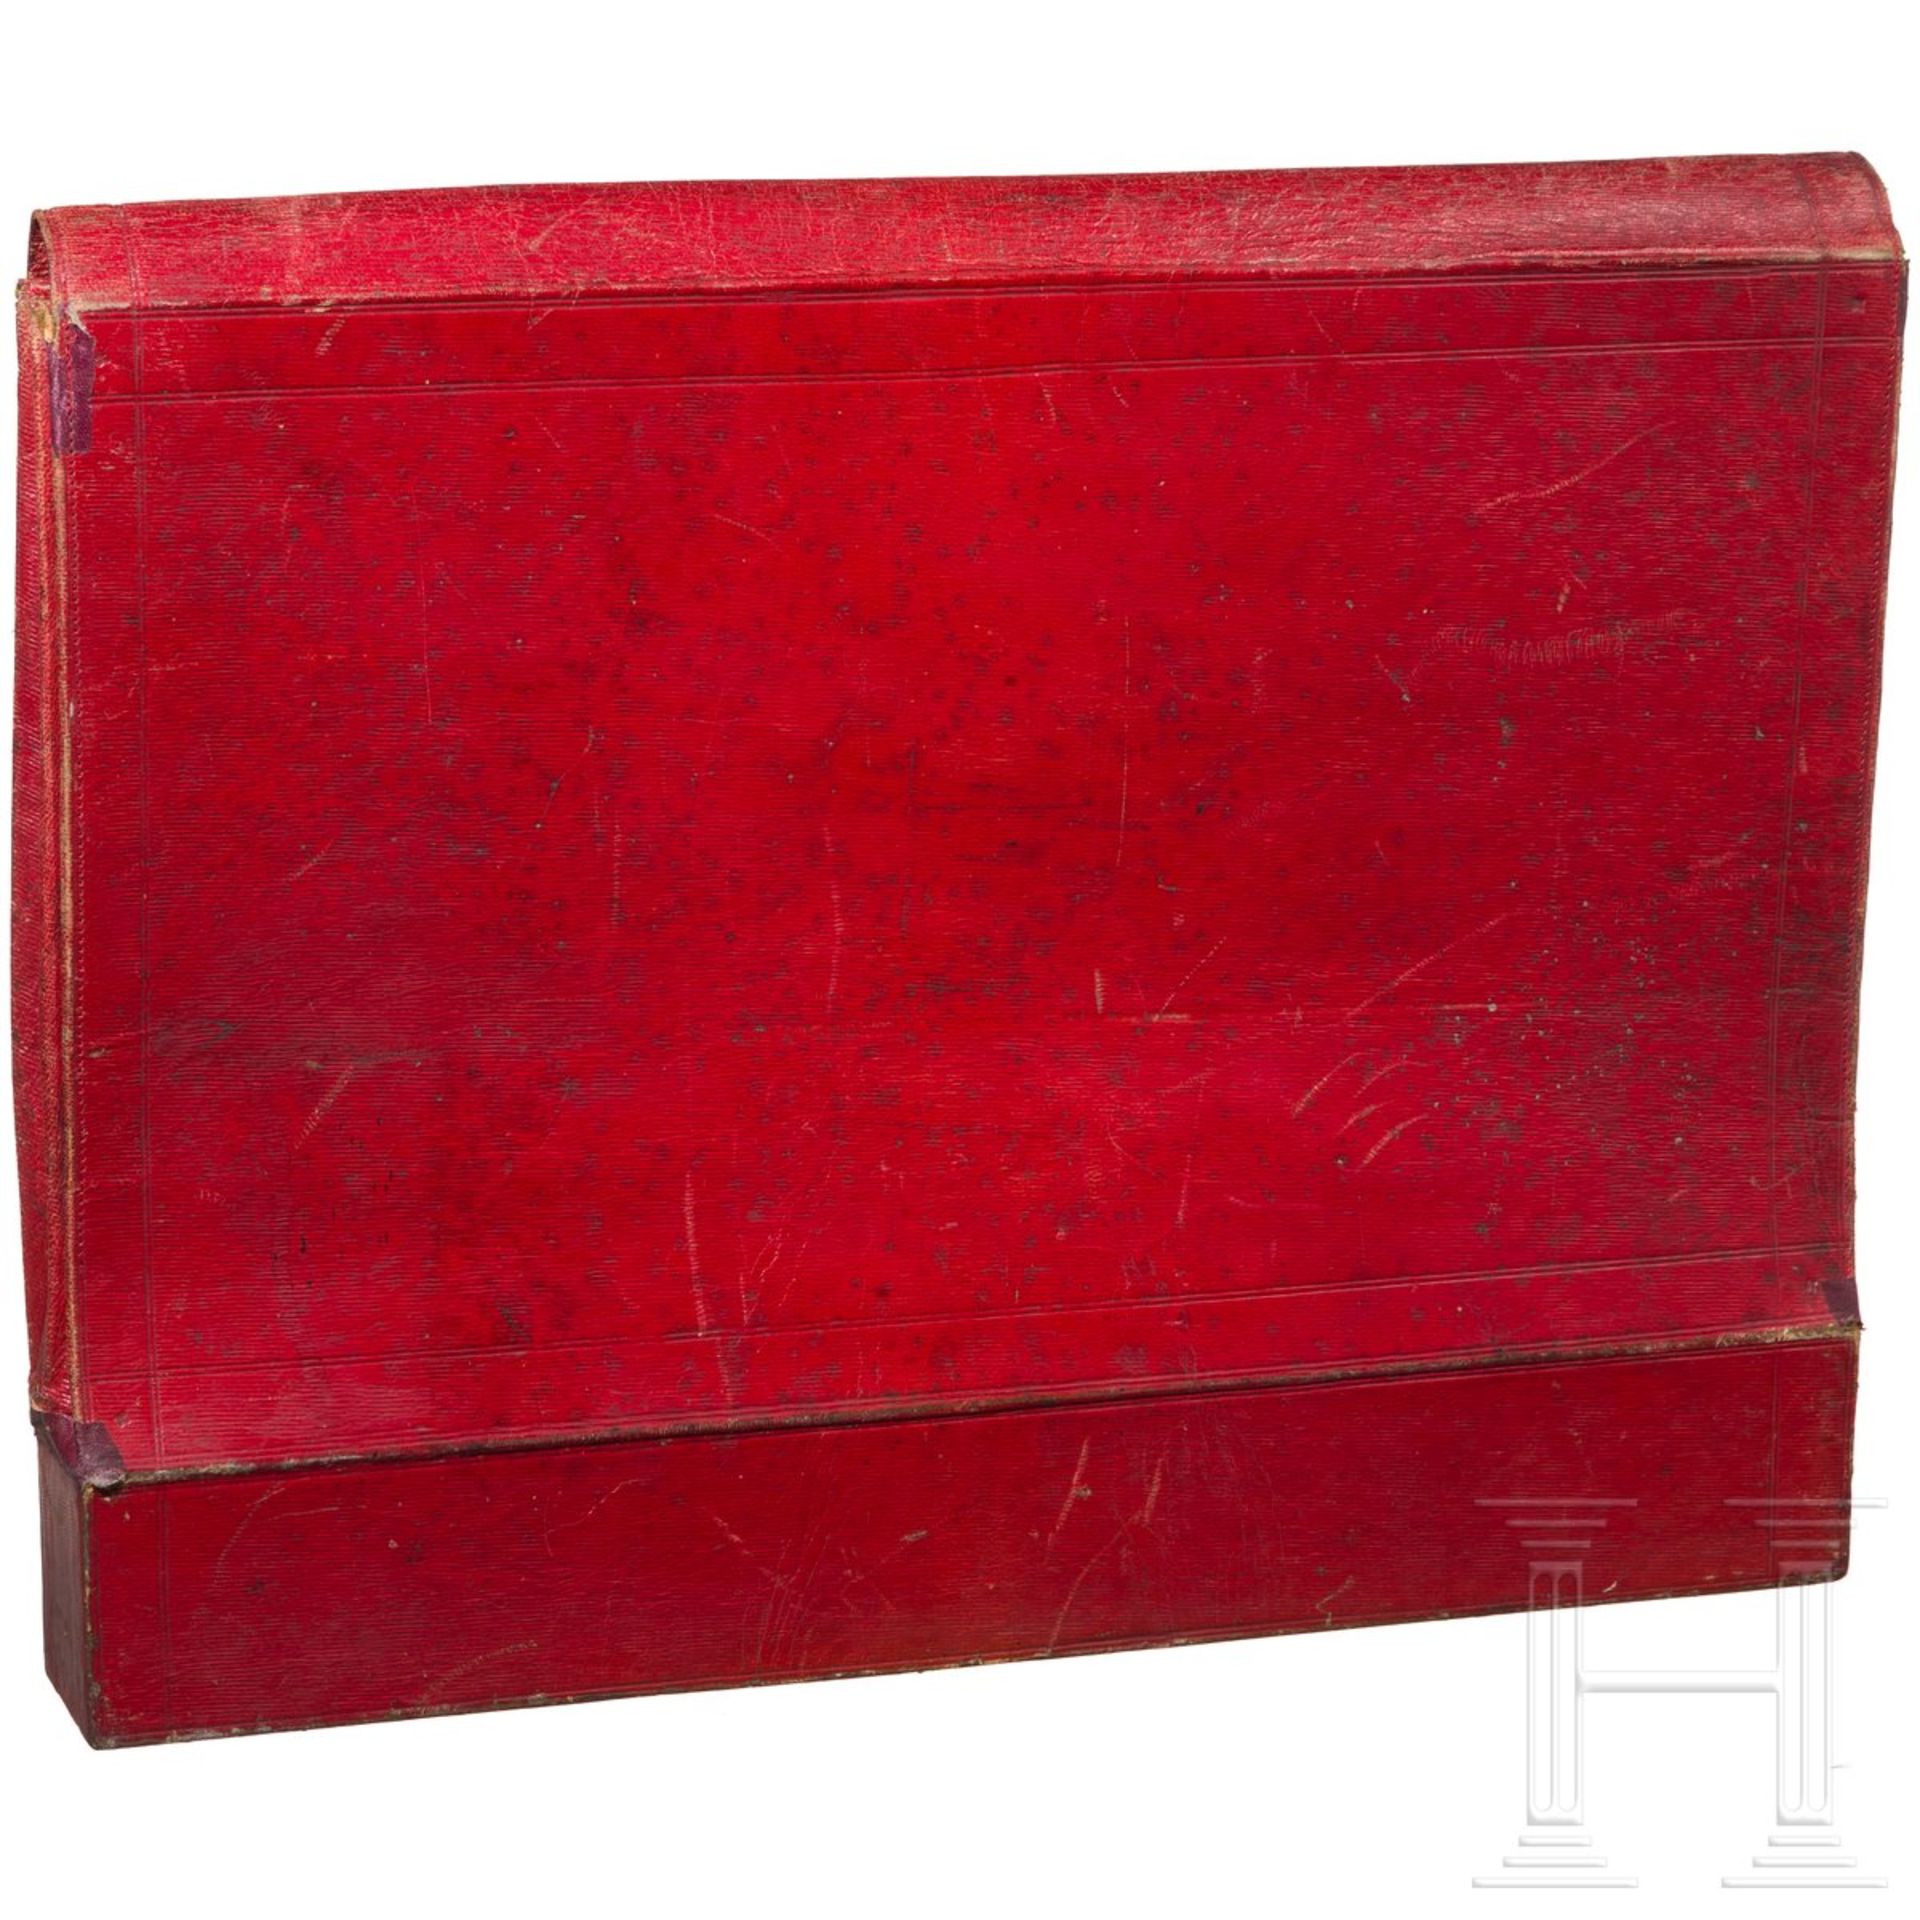 Dokumententasche aus rotem Leder, wohl Russland, 1. Drittel 19. Jhdt. - Bild 3 aus 3